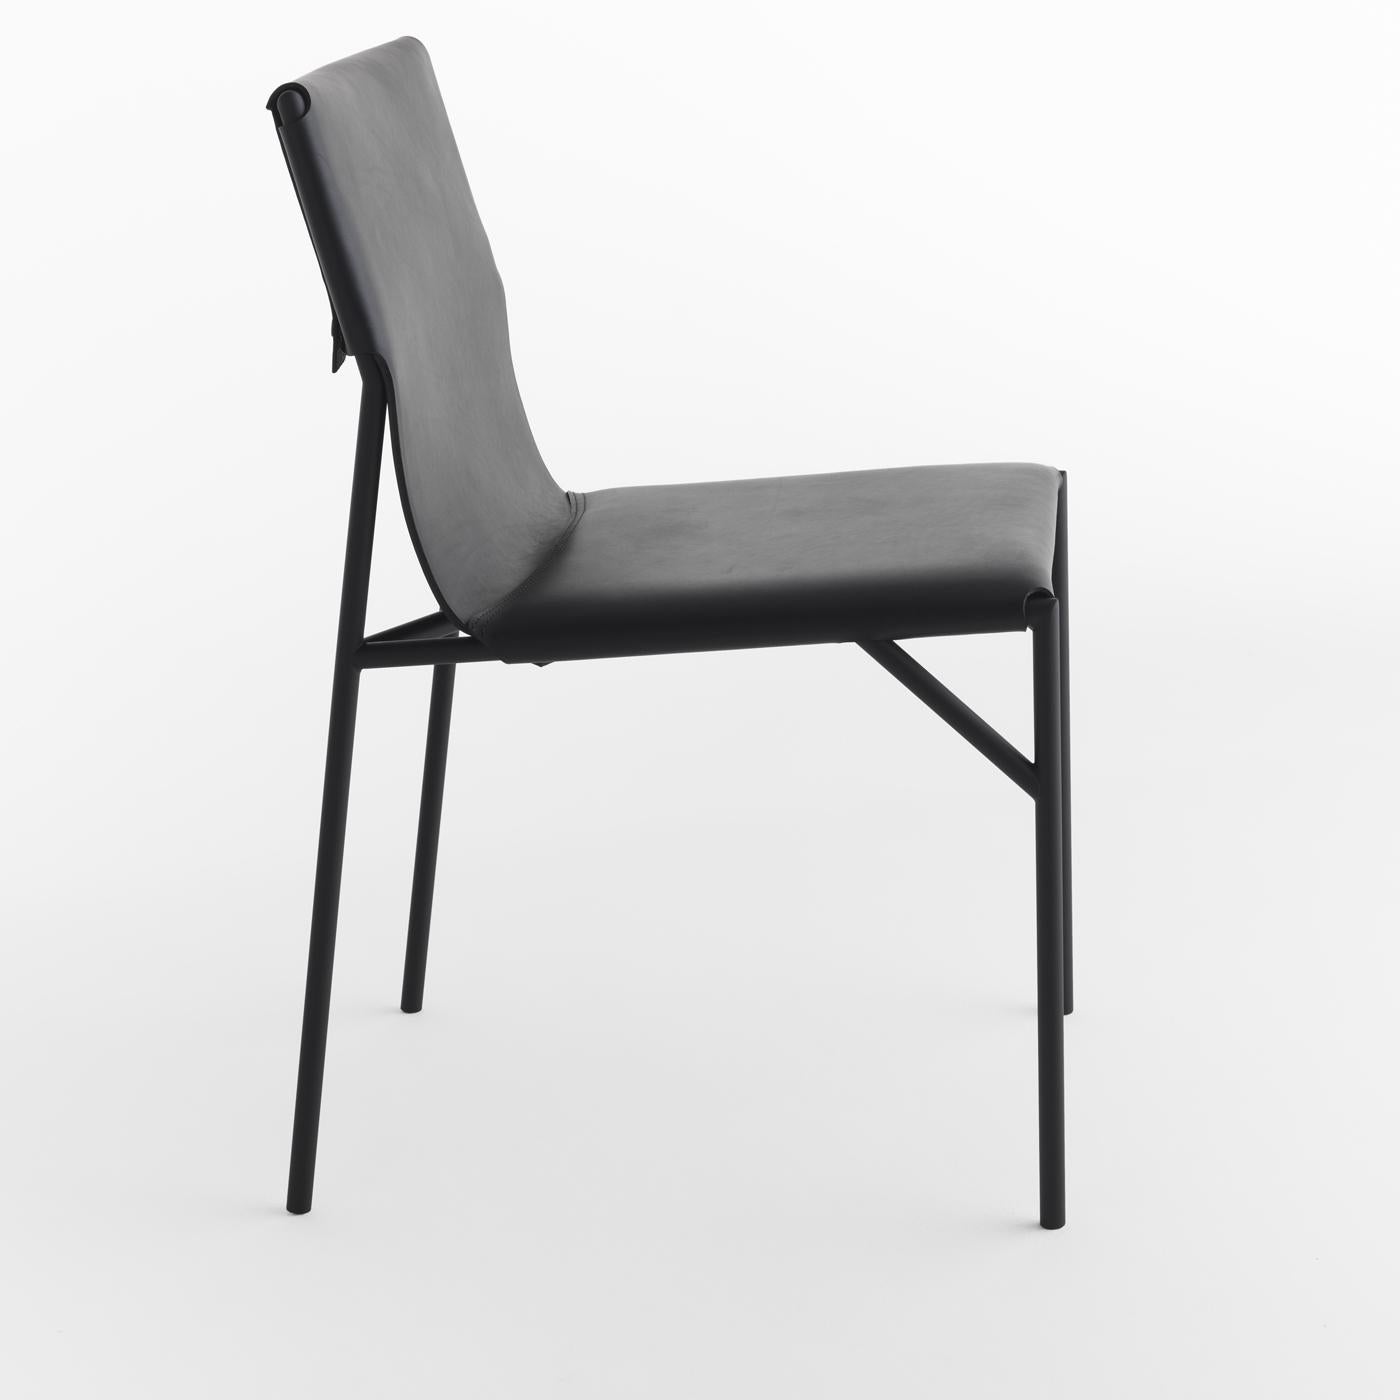 Der von March Thorpe für die Tout Le Jour-Kollektion entworfene Stuhl ist ein modernes und elegantes Stück funktioneller Einrichtung. Der ergonomische Sitz und die Rückenlehne sind mit feinem schwarzem Leder gepolstert und ruhen auf einer schlanken